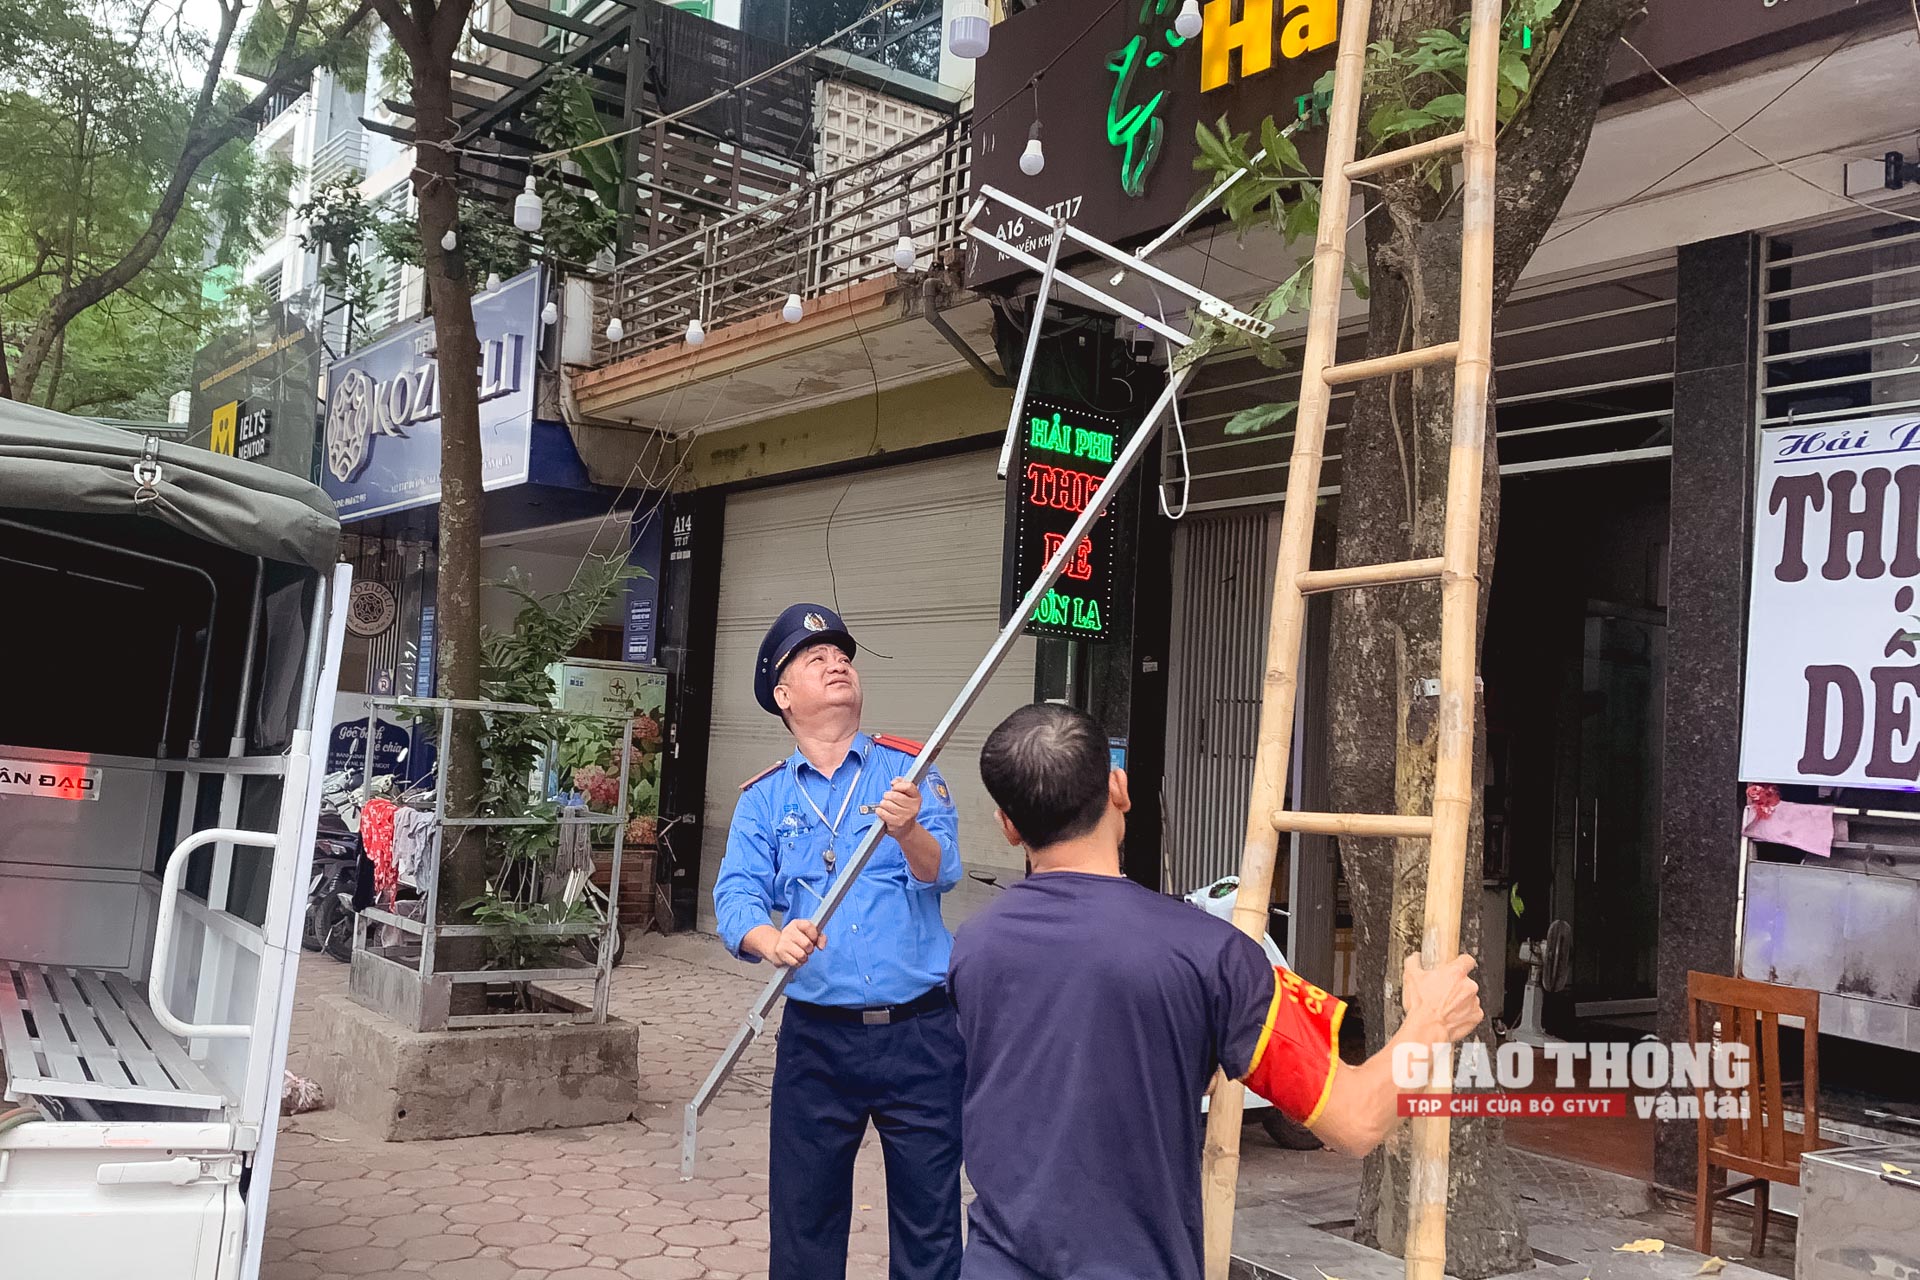 Cận cảnh lực lượng liên ngành "dọn sạch" hàng quán vỉa hè nhiều tuyến đường ở Hà Nội - Ảnh 13.